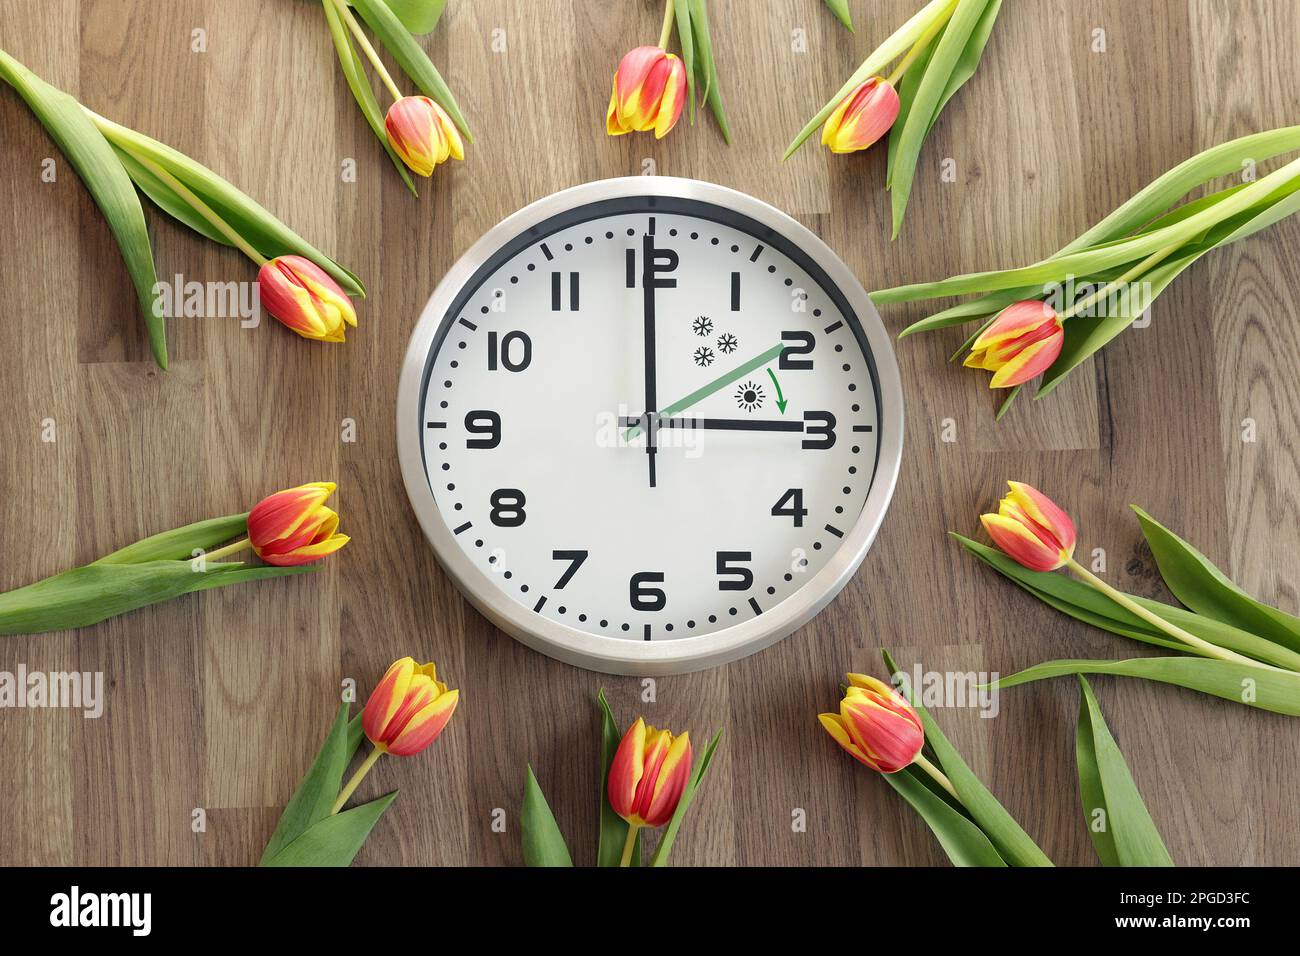 Eine Uhr zeigt drei Stunden an. Tulpen liegen herum. Ein Symbol für die Zeitänderung. Sommerzeit. Bewegen Sie die Hände nach vorne. Der grüne Pfeil ist drin Stockfoto